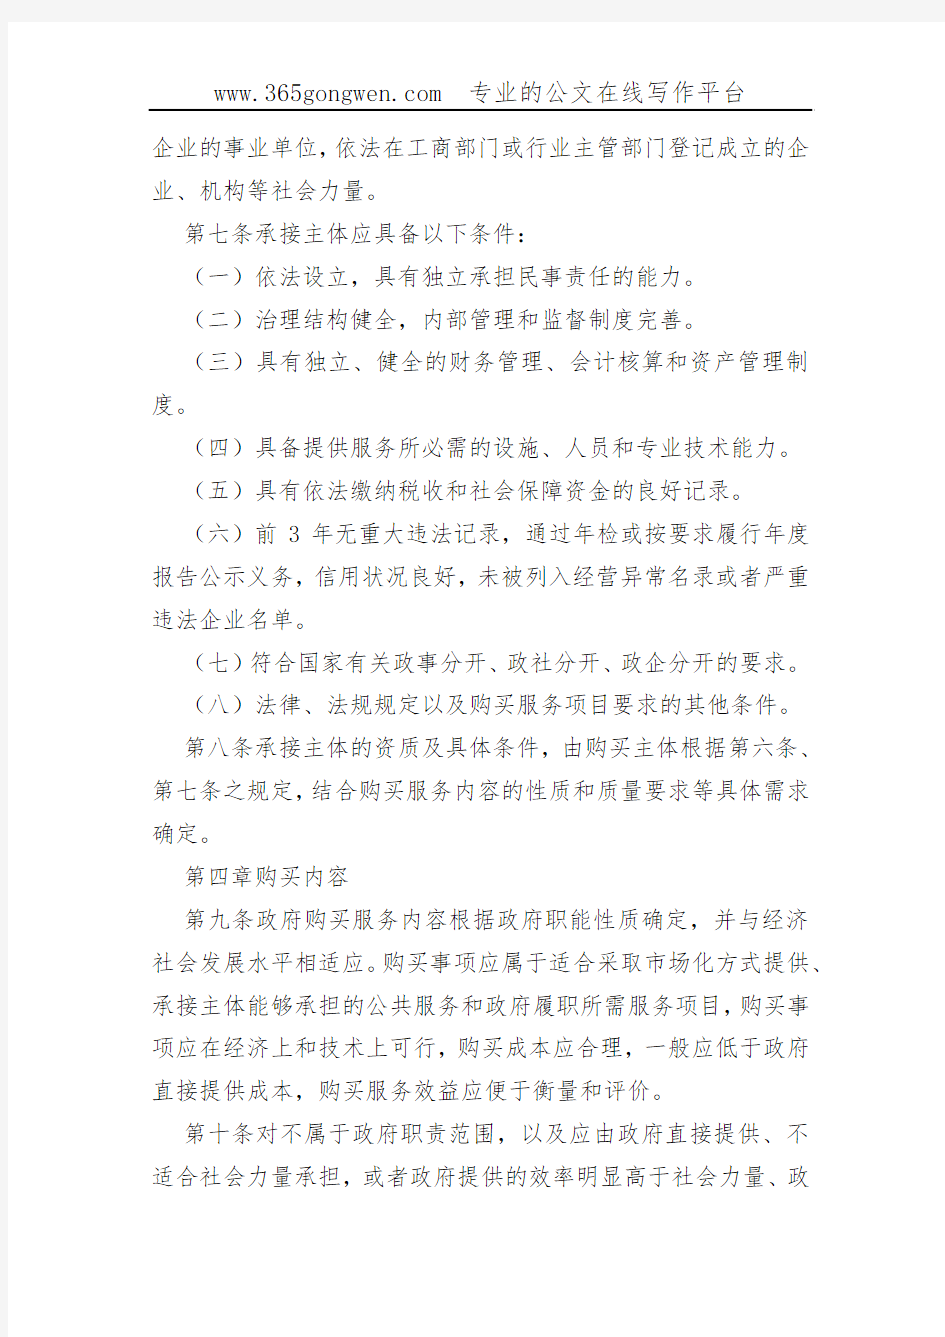 【财政办法】上海市政府购买服务管理办法